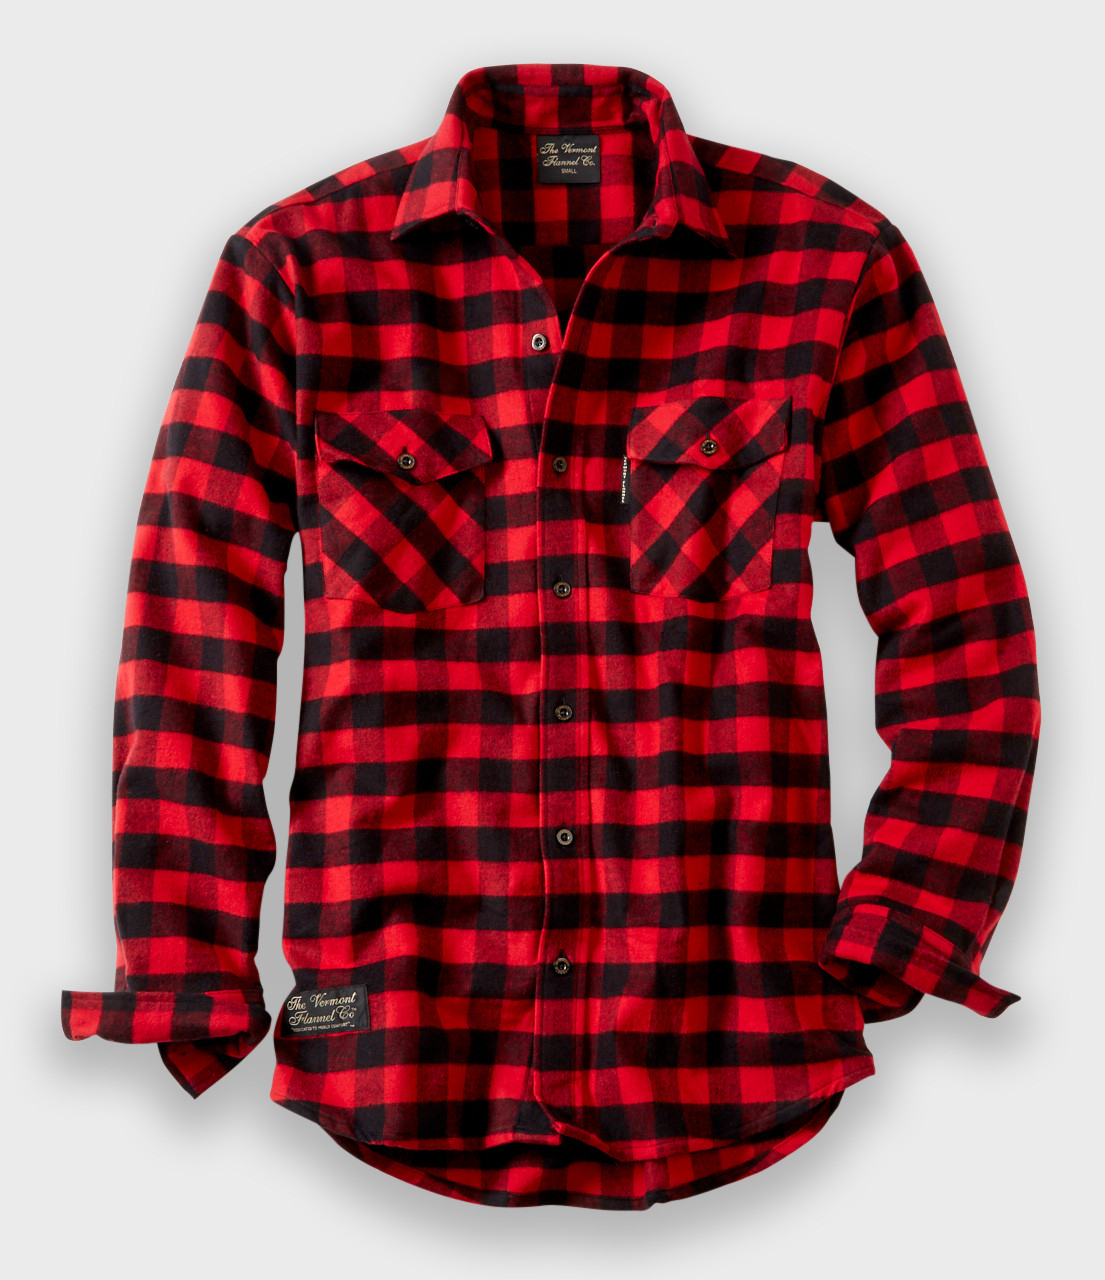 Men's Flannelette Long Sleeve Shirt 100% Cotton Check Authentic Flannel